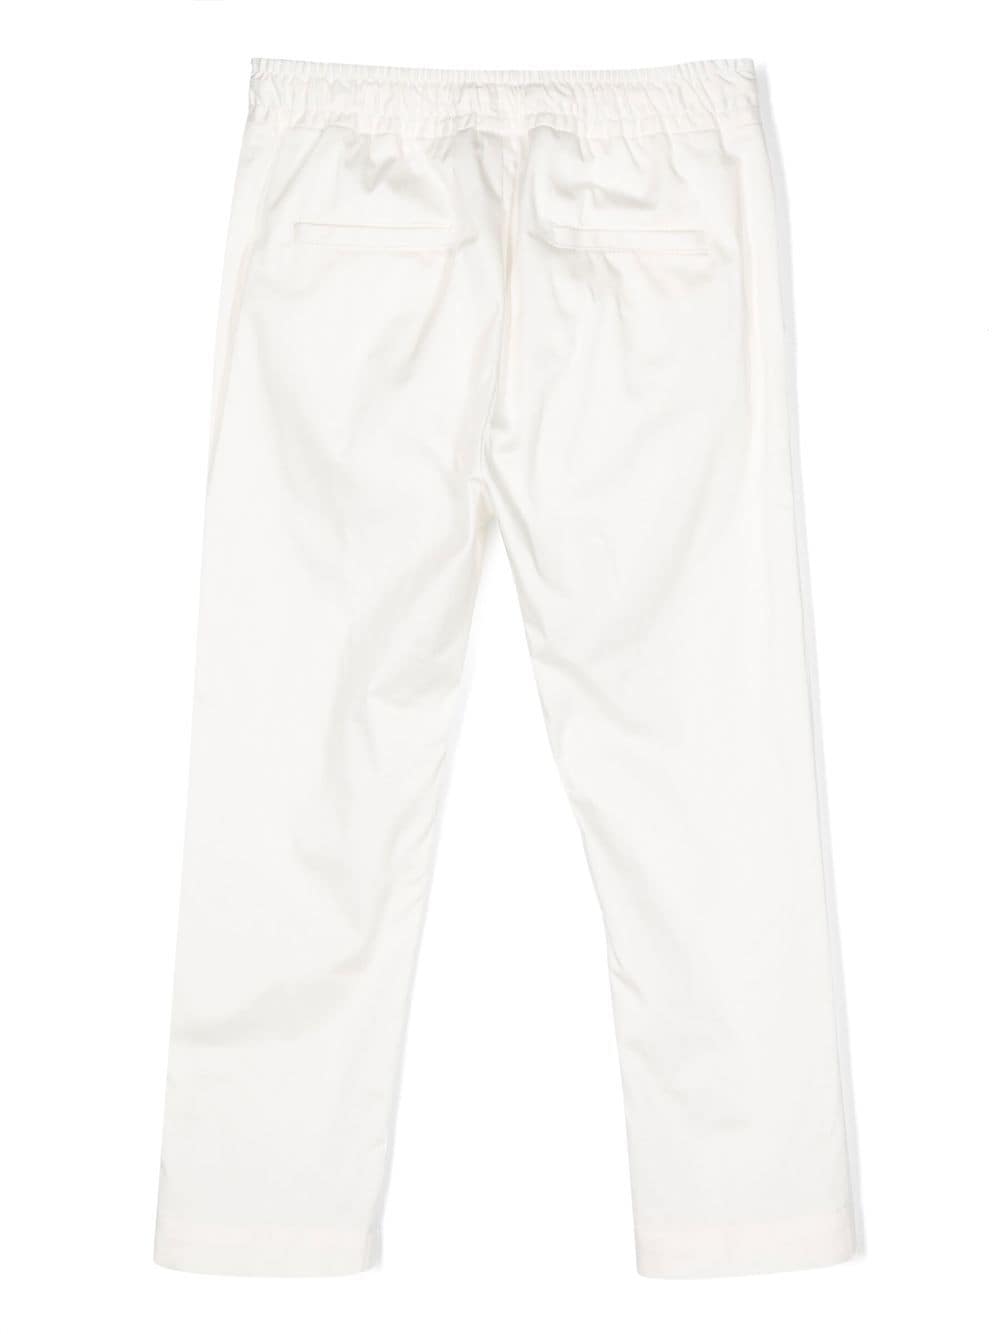 pantaloni bianchi bambino